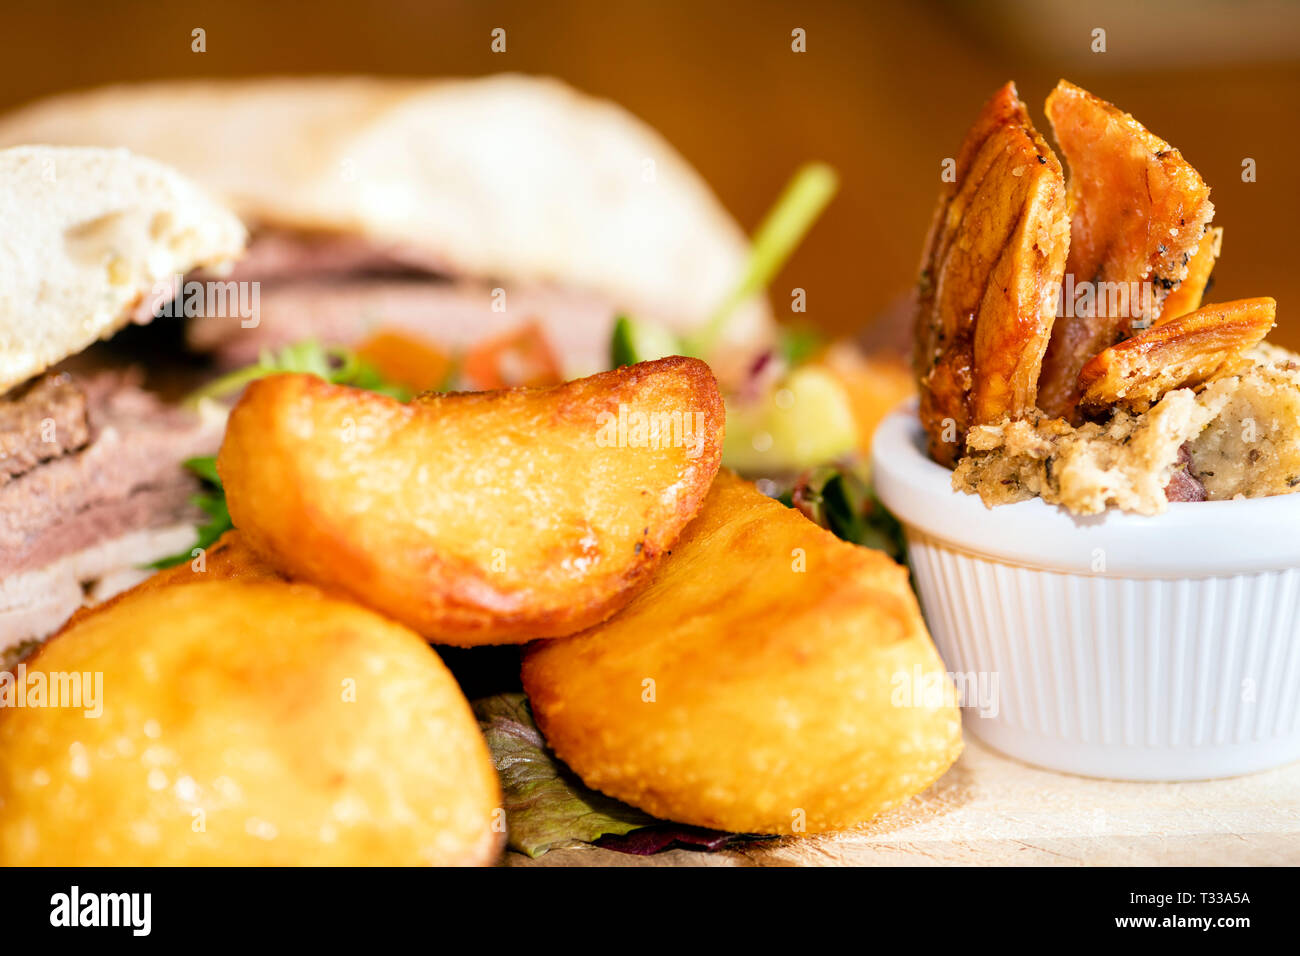 Comida de pub con patatas asadas, carne de cerdo crujiente, el relleno y un sandwich de carne ciabatta, Reino Unido. Foto de stock